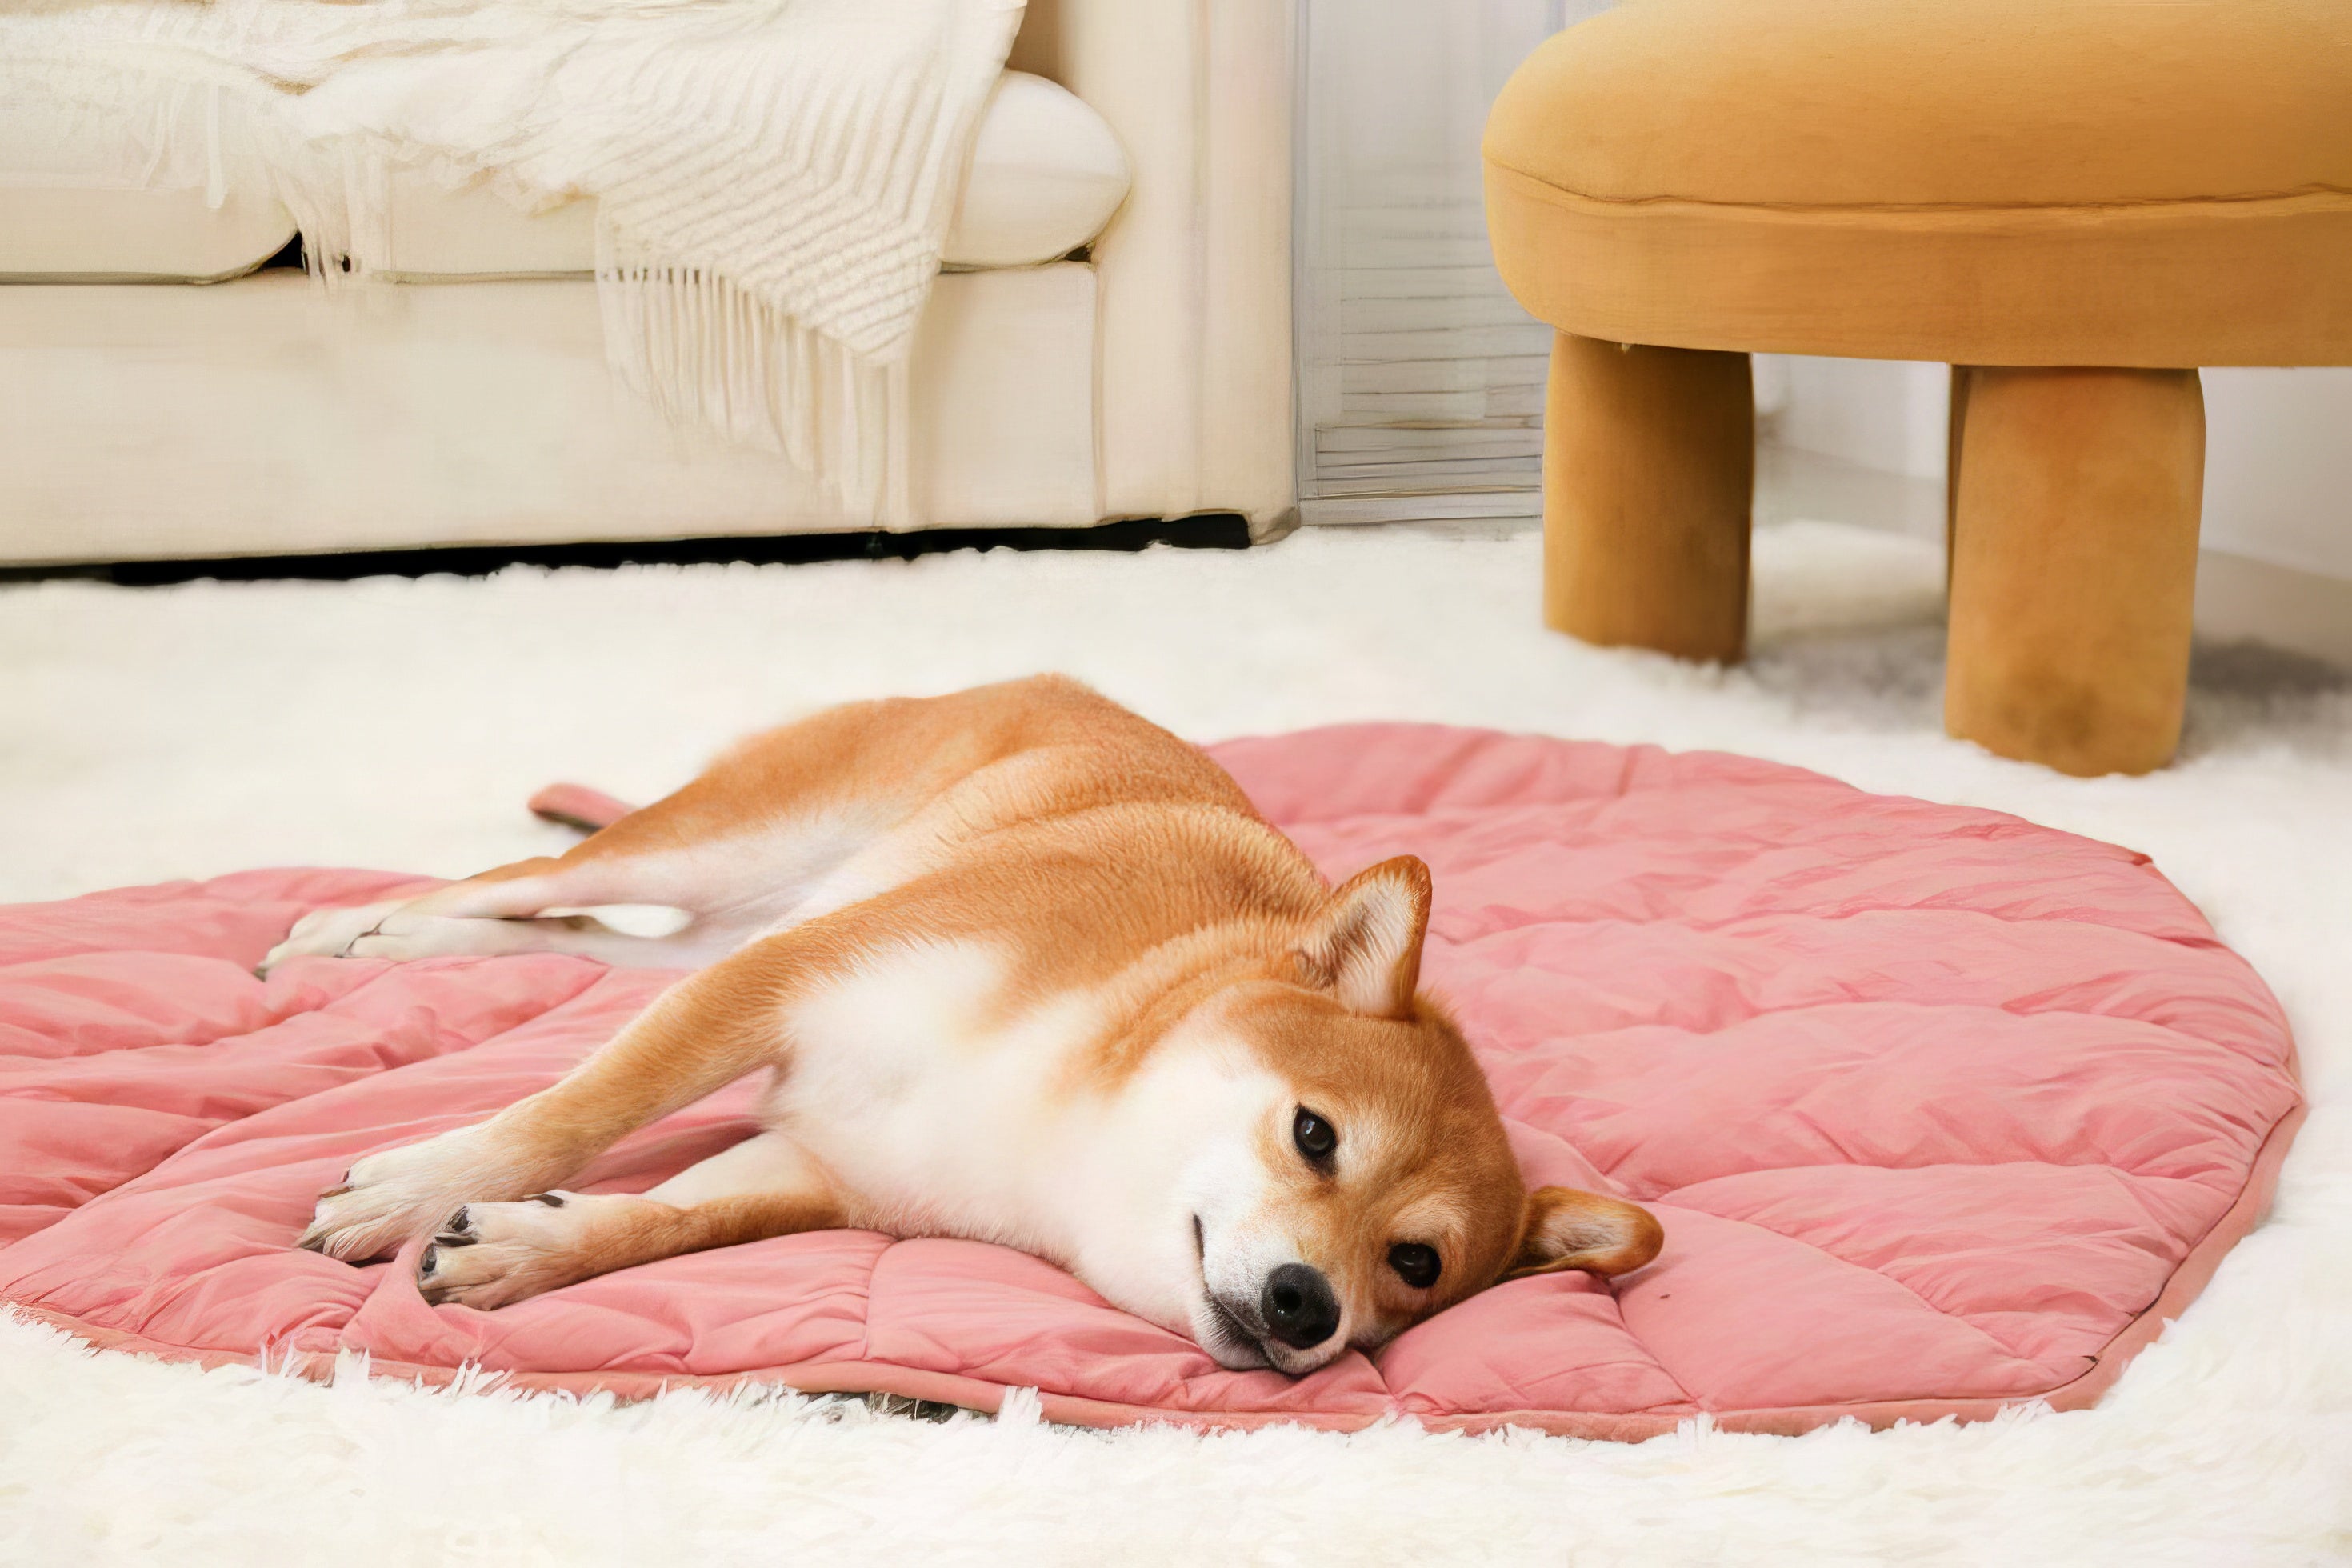 Calming Leaf Dog Bed